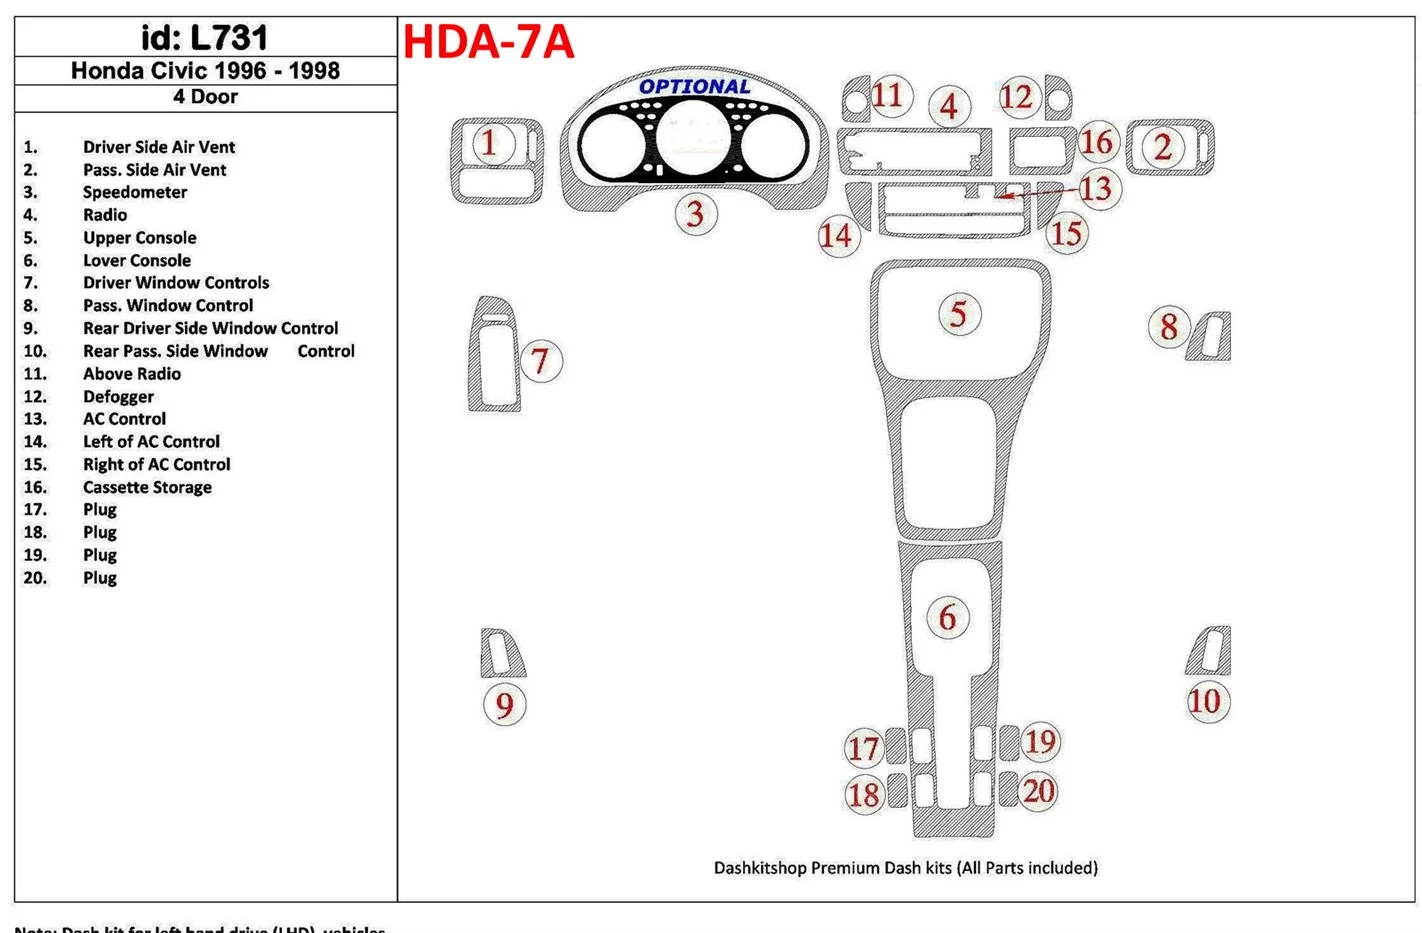 Honda Civic 1996-1998 4 Des portes, Ensemble Complet, 20 Parts set BD Kit la décoration du tableau de bord - 1 - habillage decor